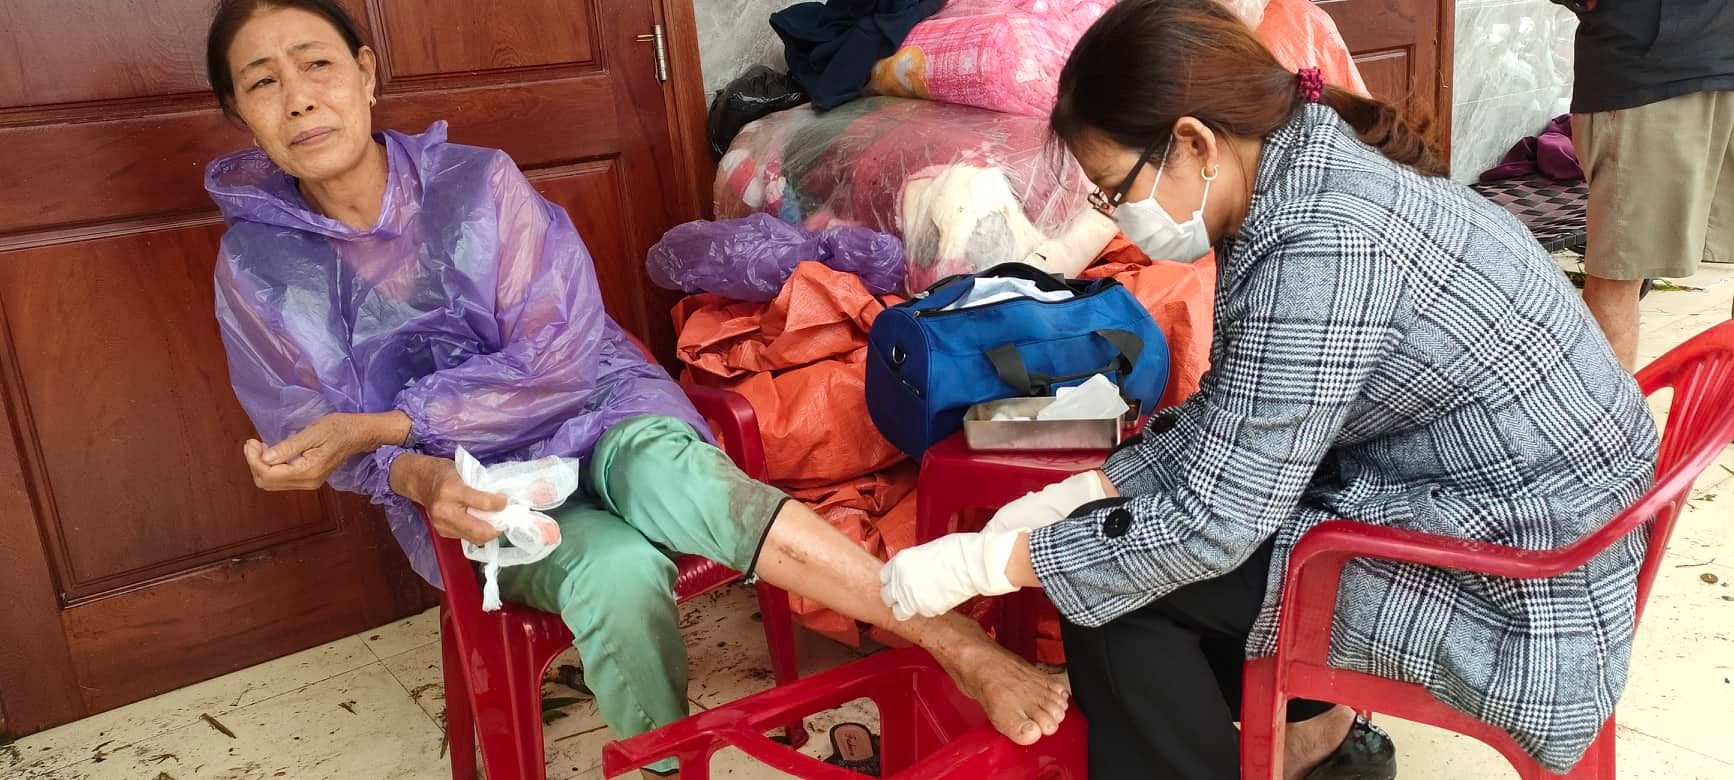 Bà Nguyễn Thị năm ở thôn Khánh Mỹ ngói đè bị thương ở chân